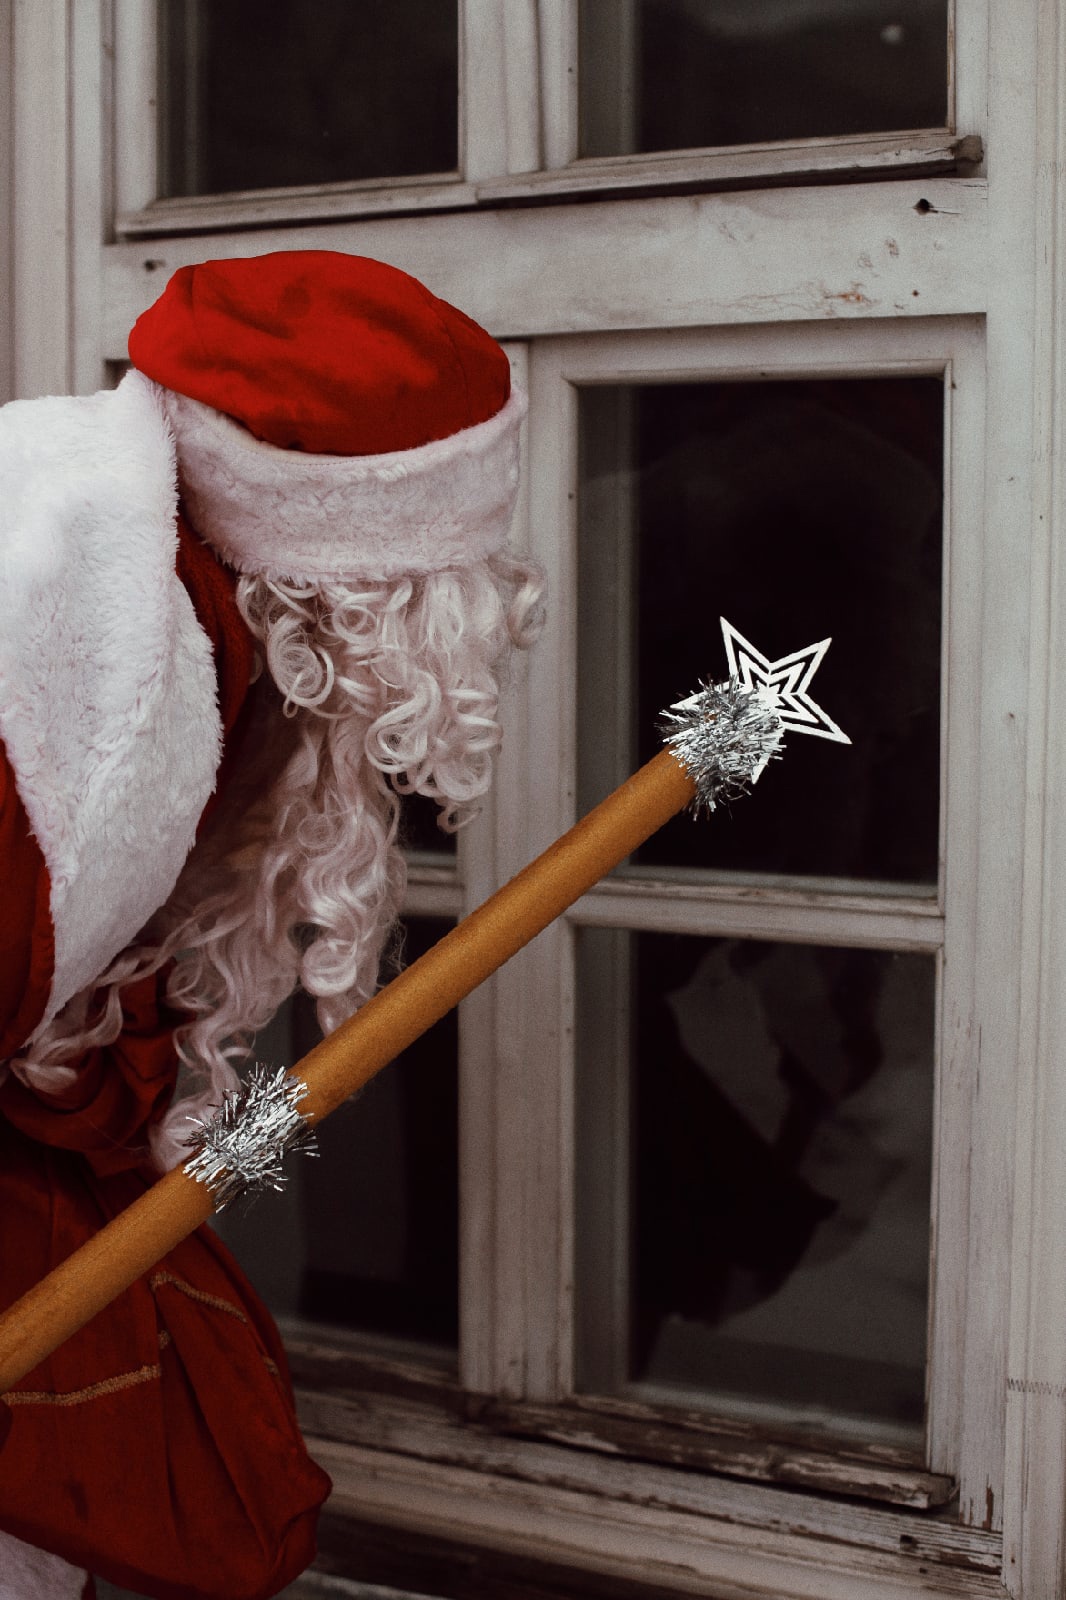 Услуги Деда Мороза и Снегурочки подорожали, но спрос на них растет. 31 декабря новогодние волшебники нарасхват. «Ключ-Медиа» узнал, сколько нынче стоит праздник дома.